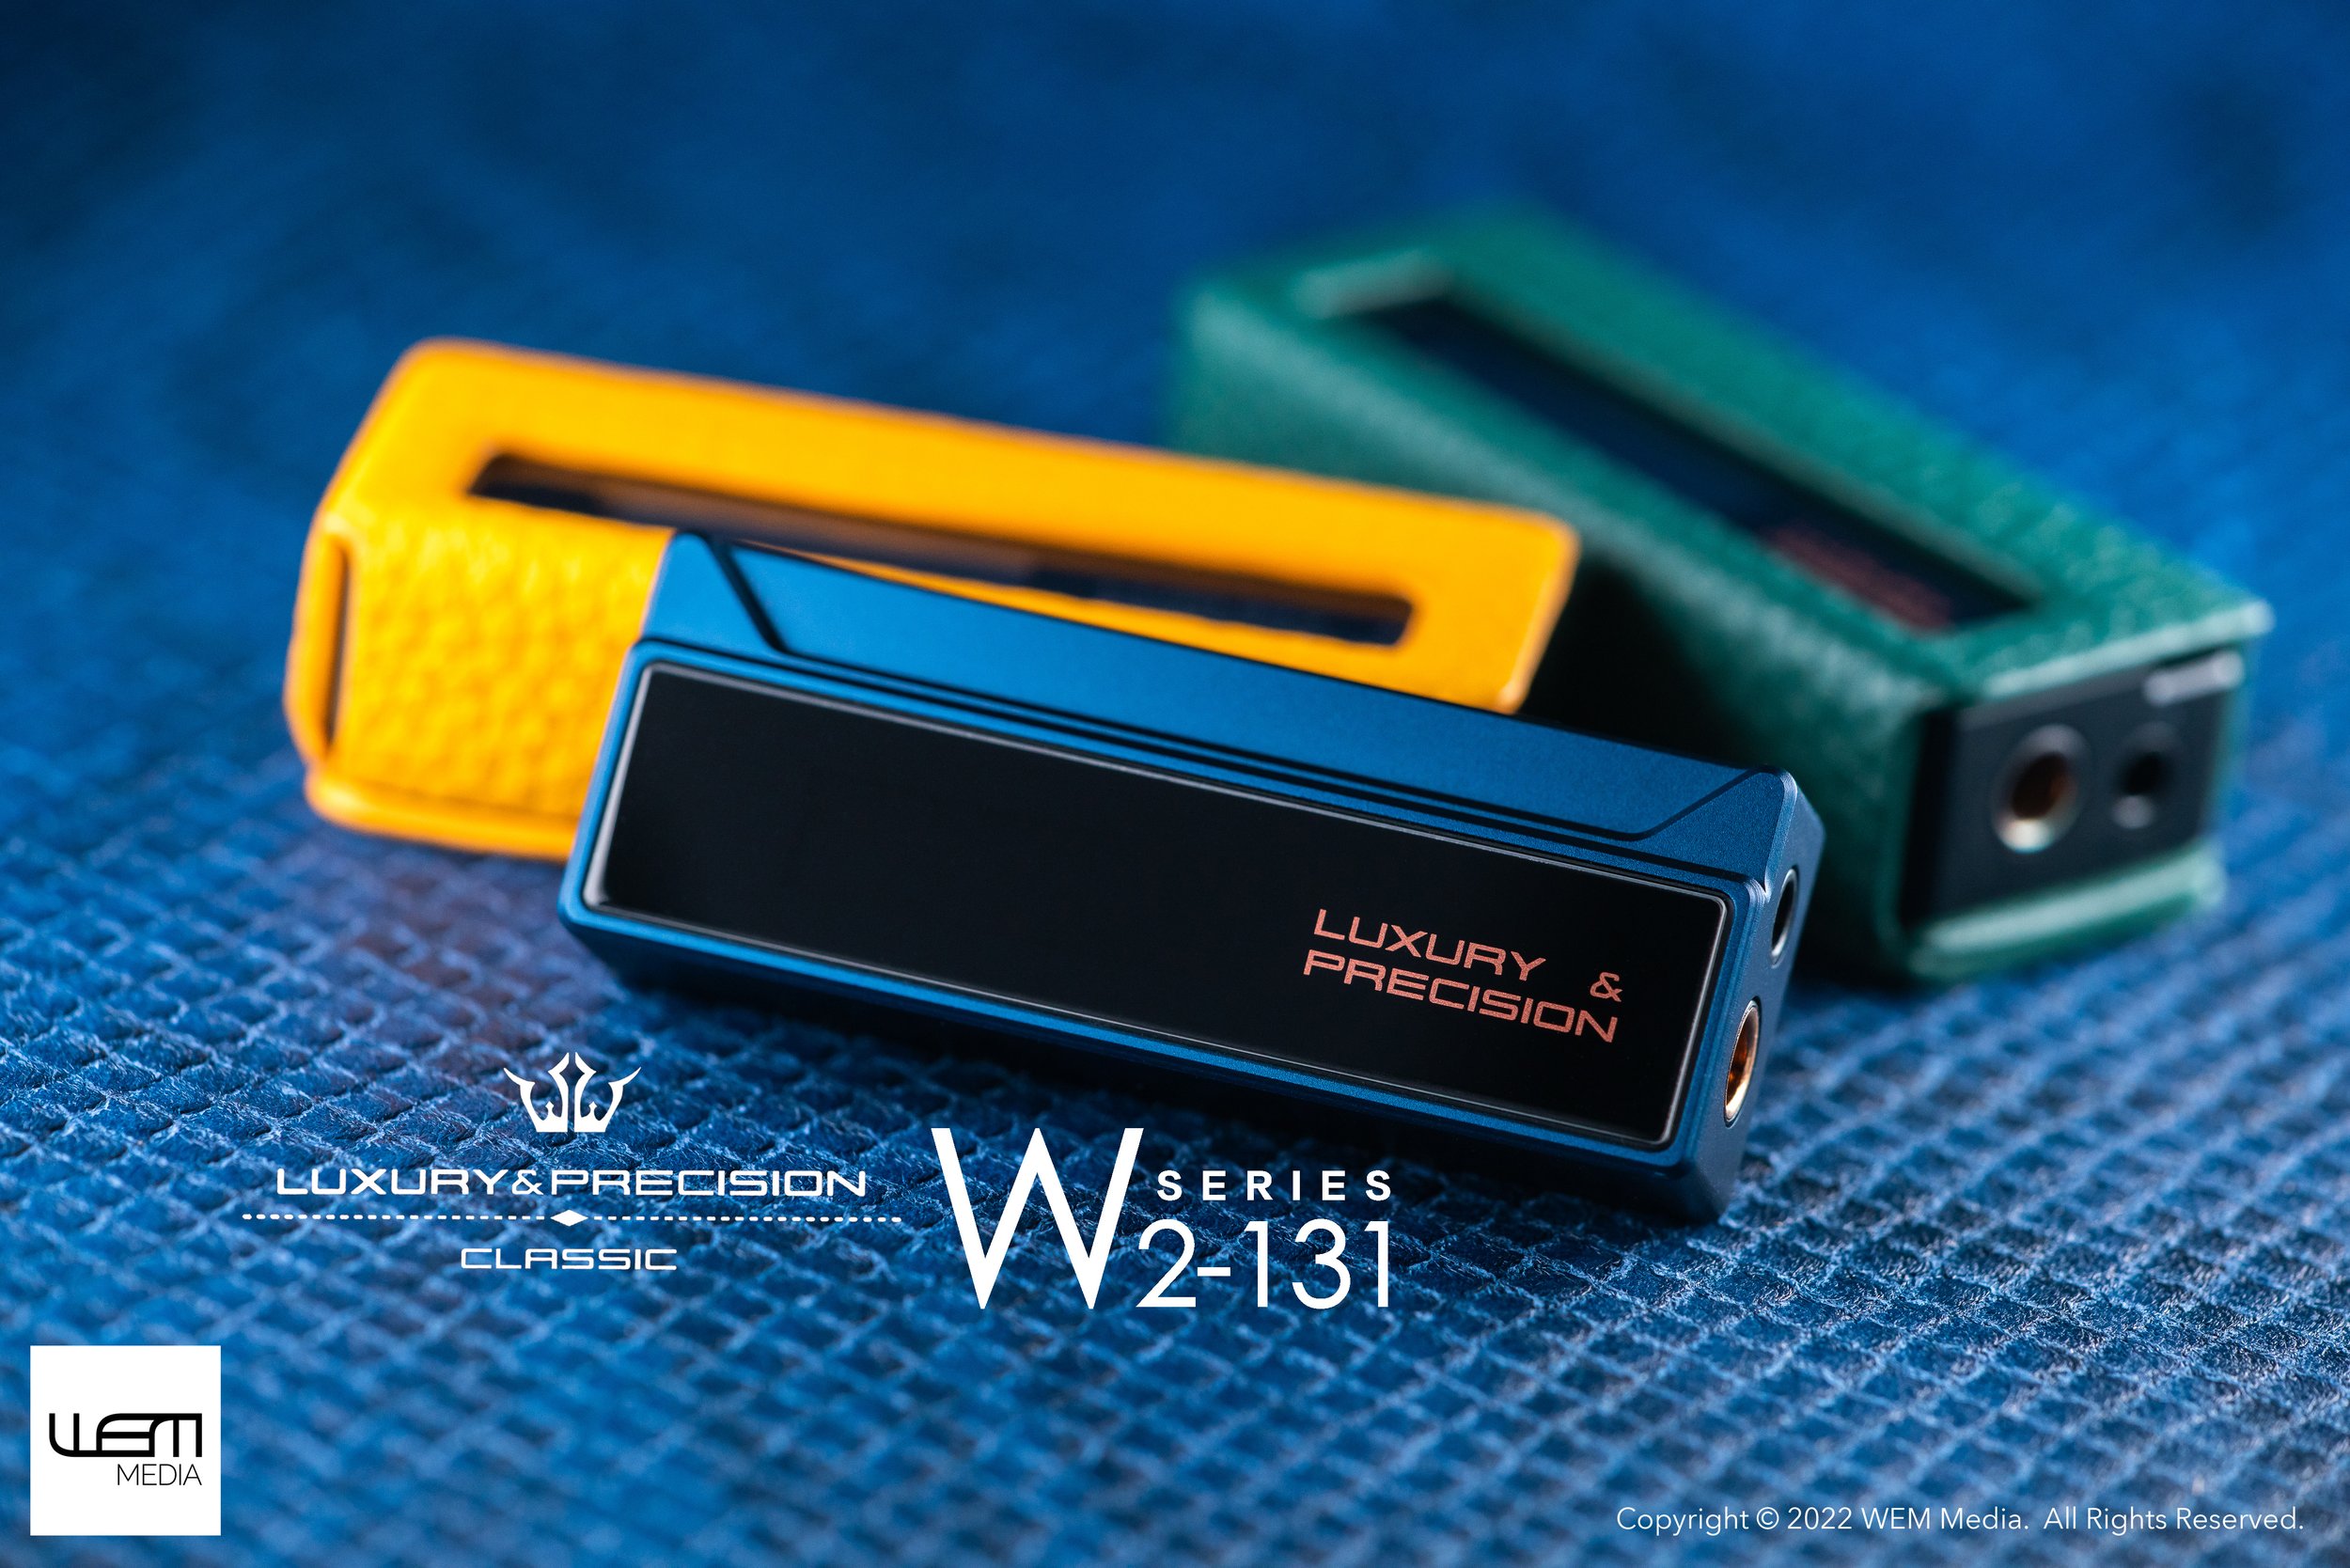 Luxury & Precision W2-131 - WEM Media